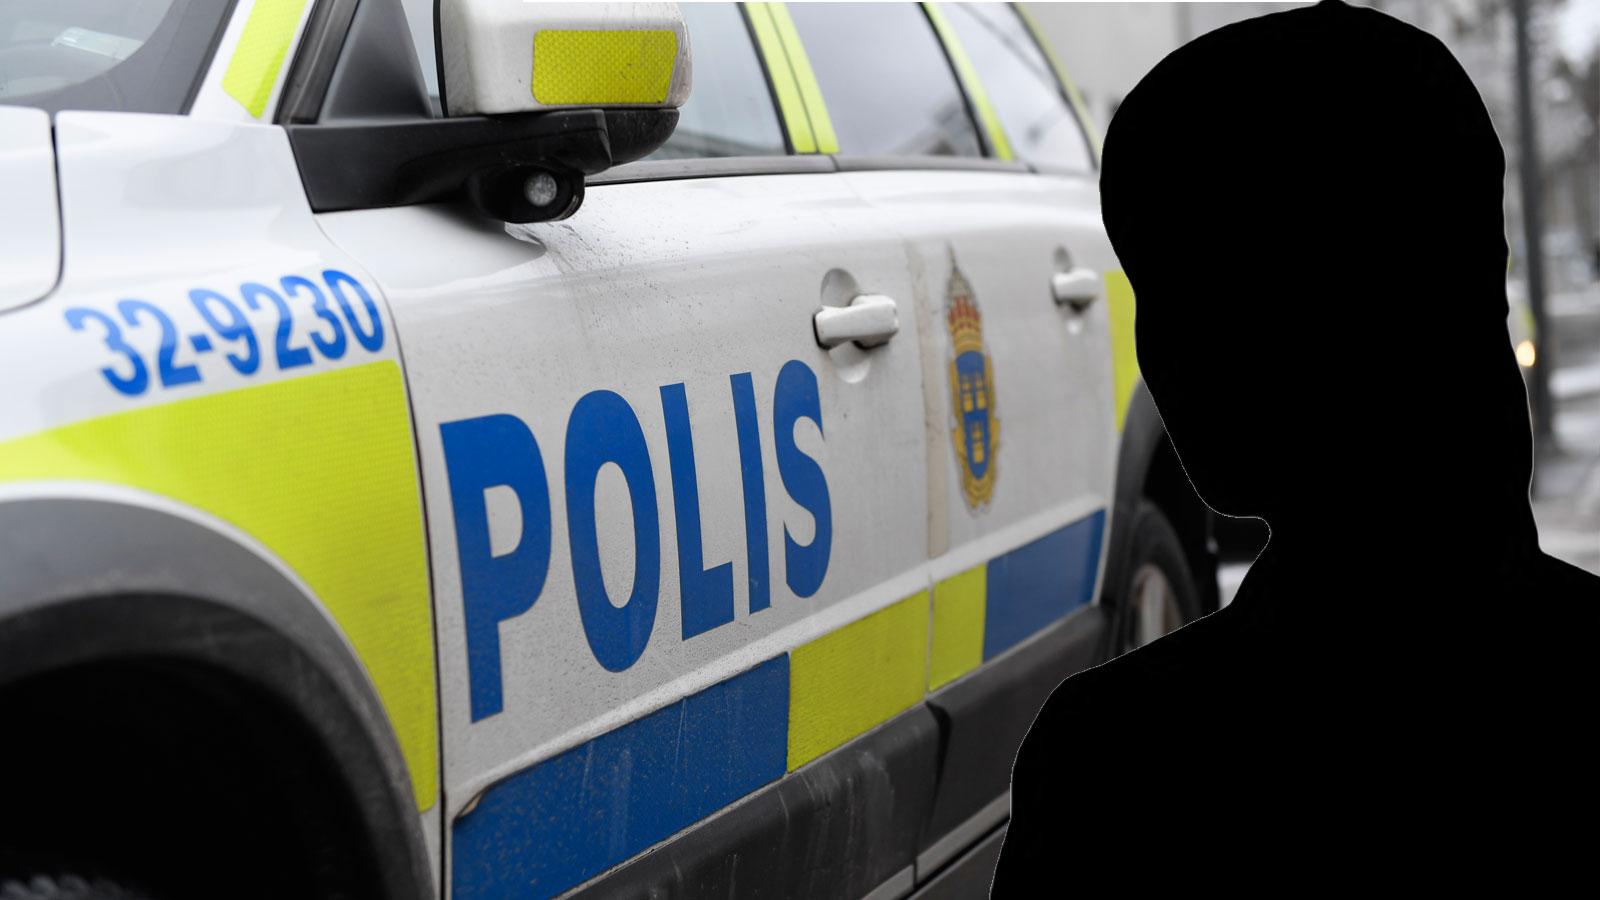 Enligt uppgifter till Nöjesbladet greps realityprofilen i samband med en polisrazzia.